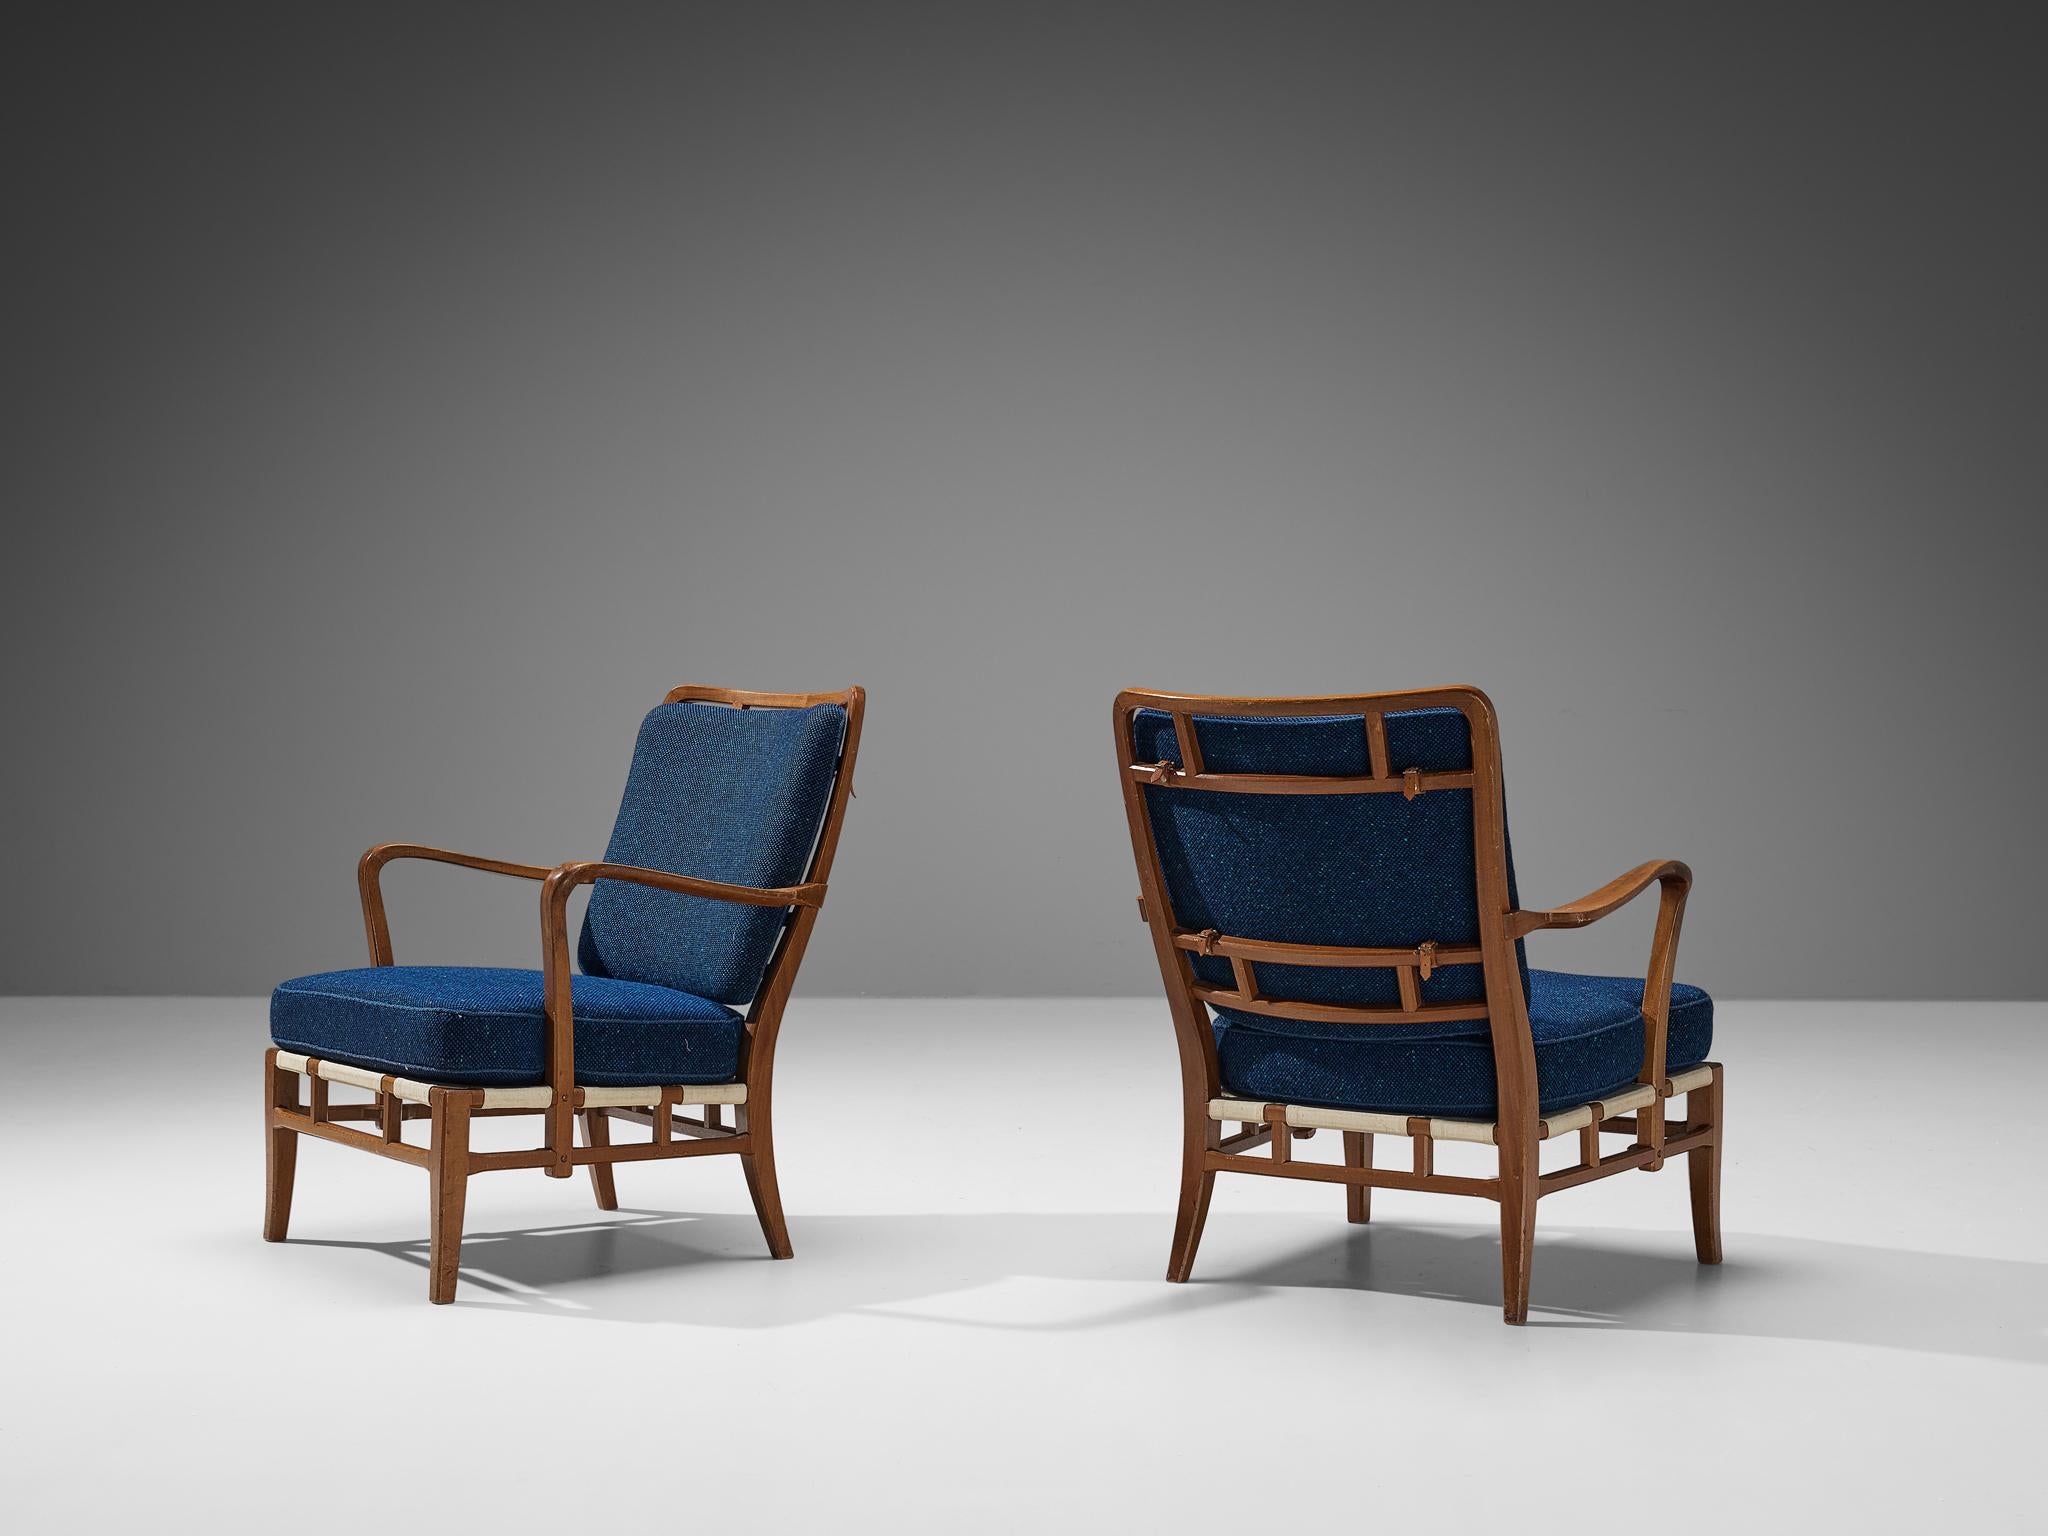 Carl-Axel Acking für Nordiska Kompaniet Hantverk, Loungesessel, Mahagoni, Stoff, Schweden, 1940er Jahre

Schöne Stühle mit einer bedeutenden Provenienz. Diese Stühle wurden von Carl-Axel Acking entworfen und waren zuvor sein Eigentum. Diese Stühle